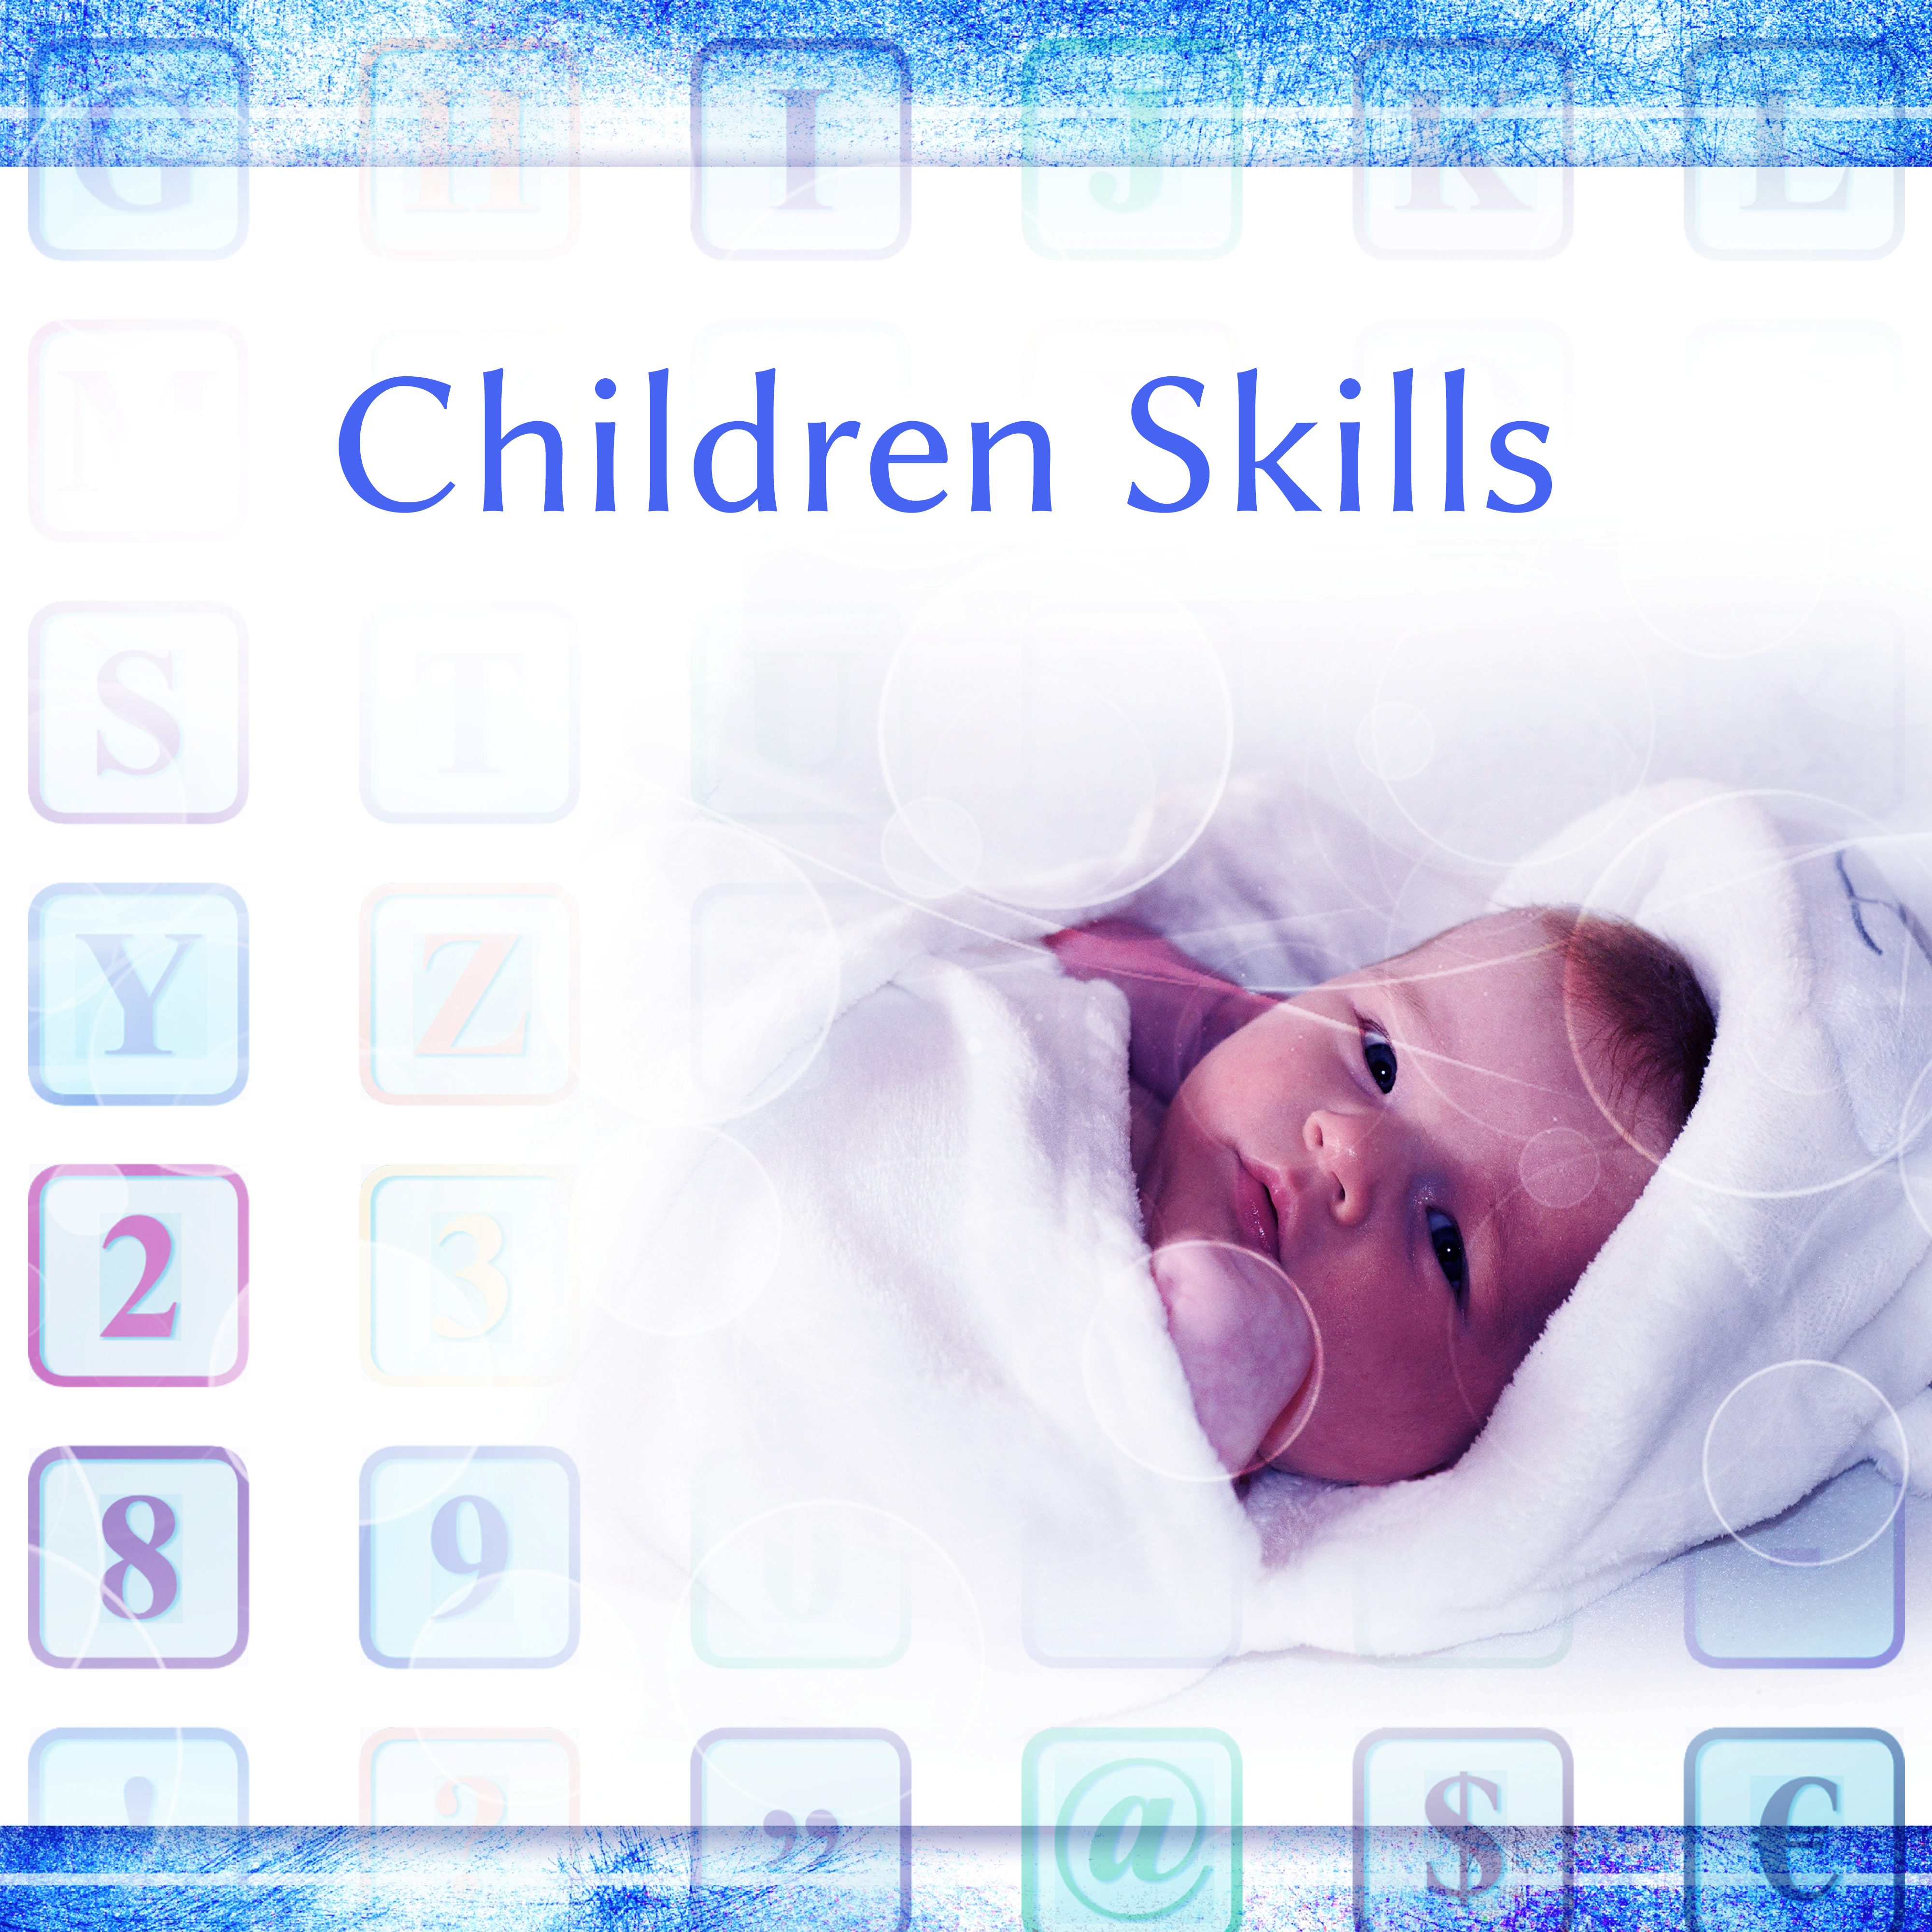 Children Skills – Music for Baby, Development Songs, Einstein Effect, Tchaikovsky, Mozart, Pachelbel